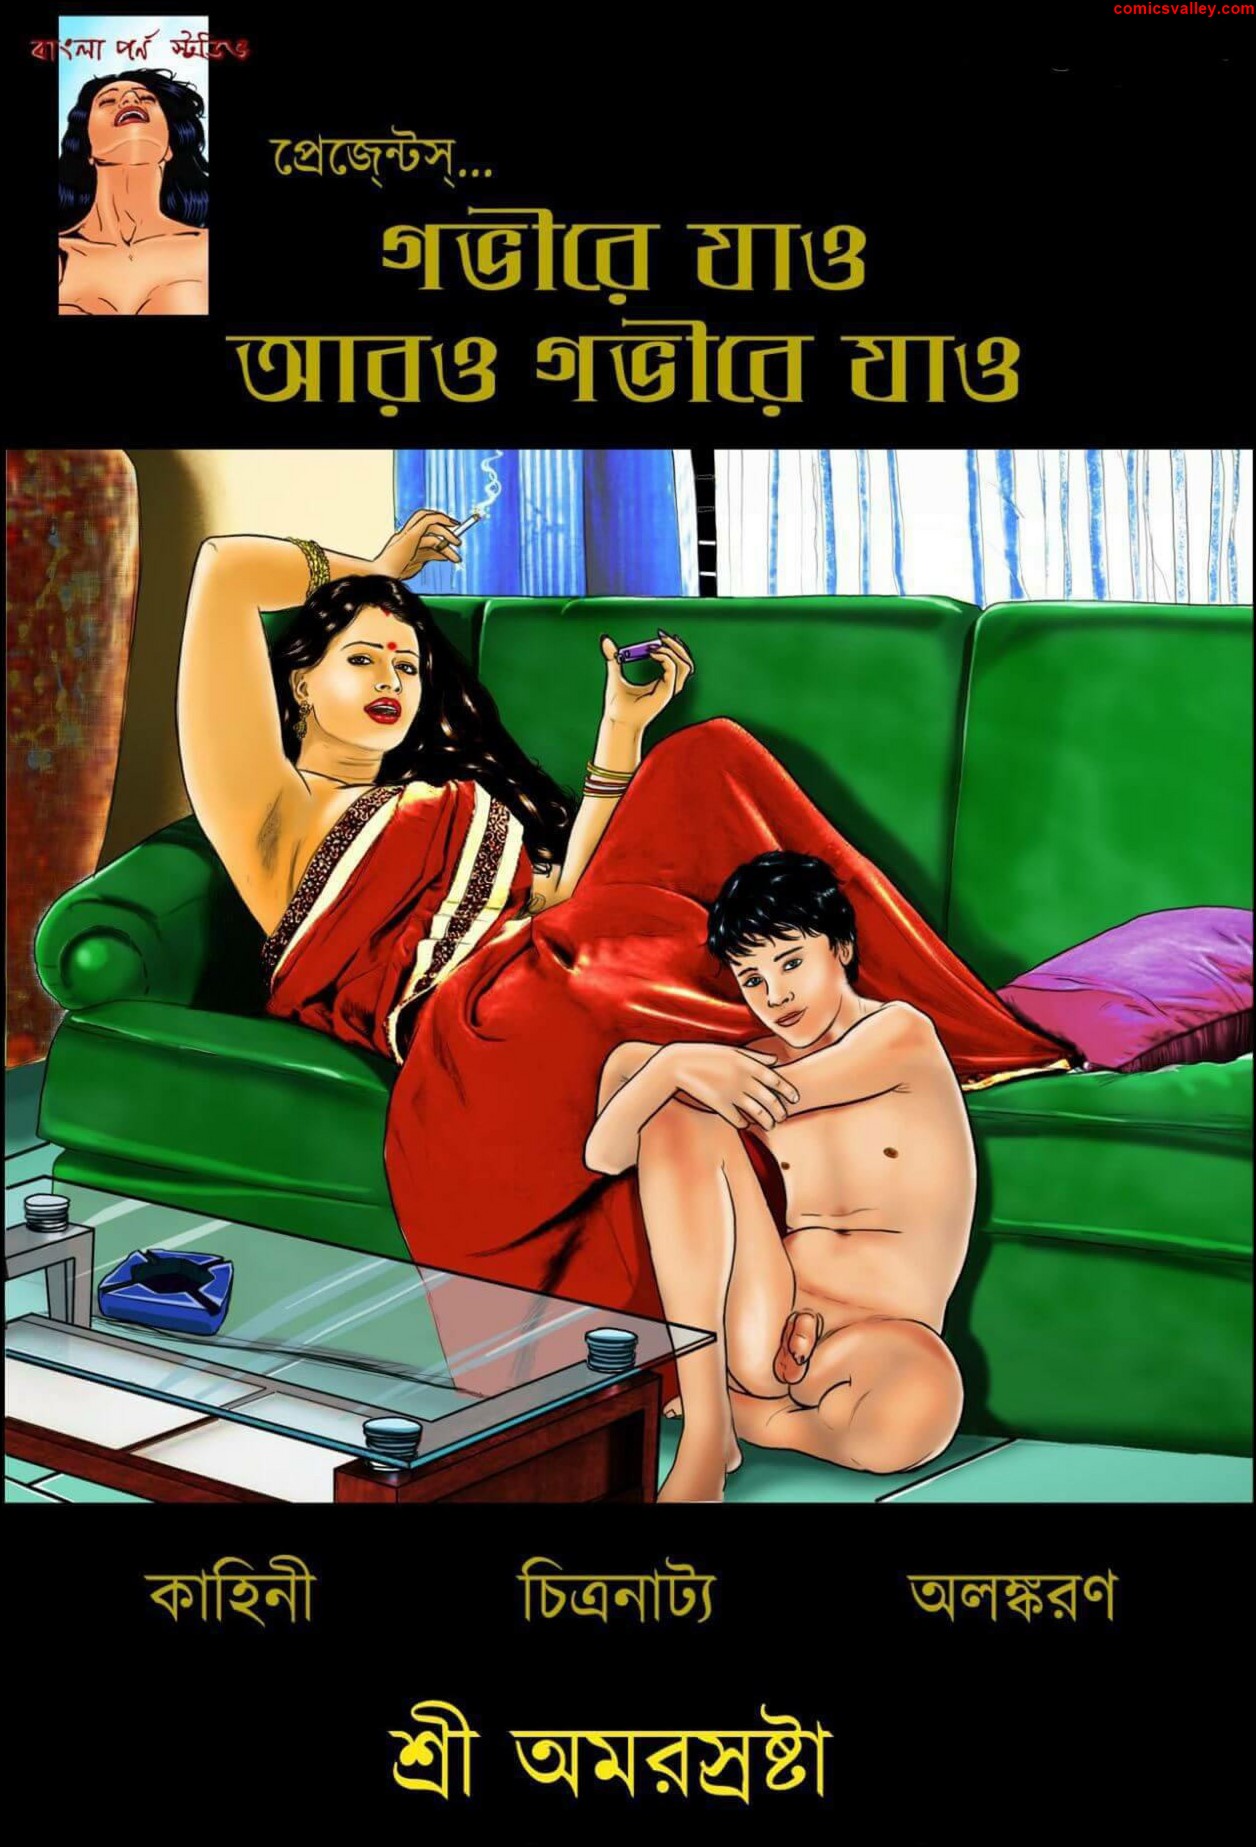 Bengali porn comic